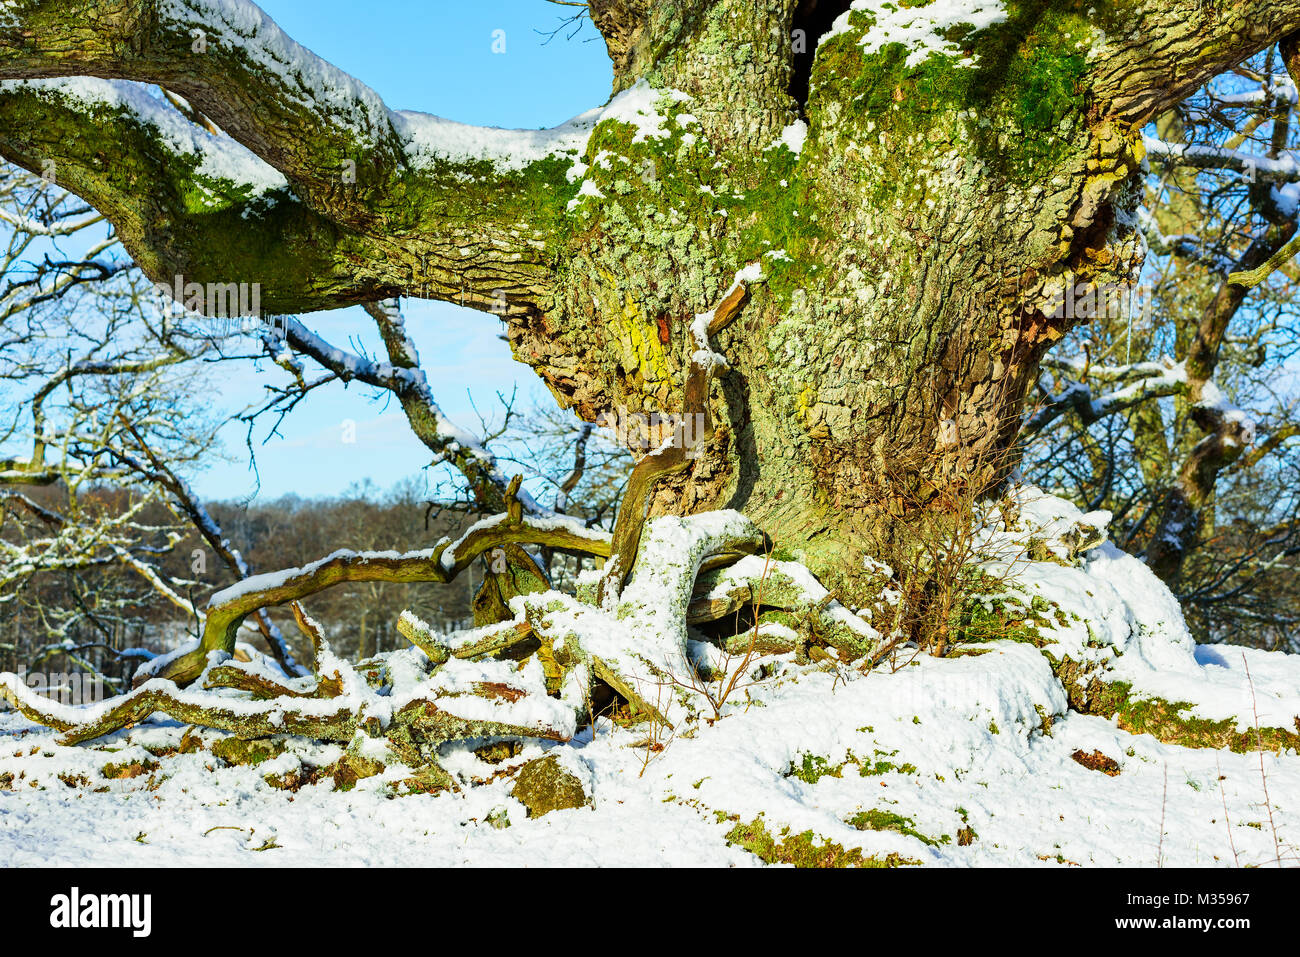 Grüne Moos bedeckt Rinde auf einem alten, knorrigen Eiche im Winter Landschaft. Tot gefallen sammeln Holz als Ablagerungen auf dem Boden. Naturschutzgebiet in Johannis Stockfoto